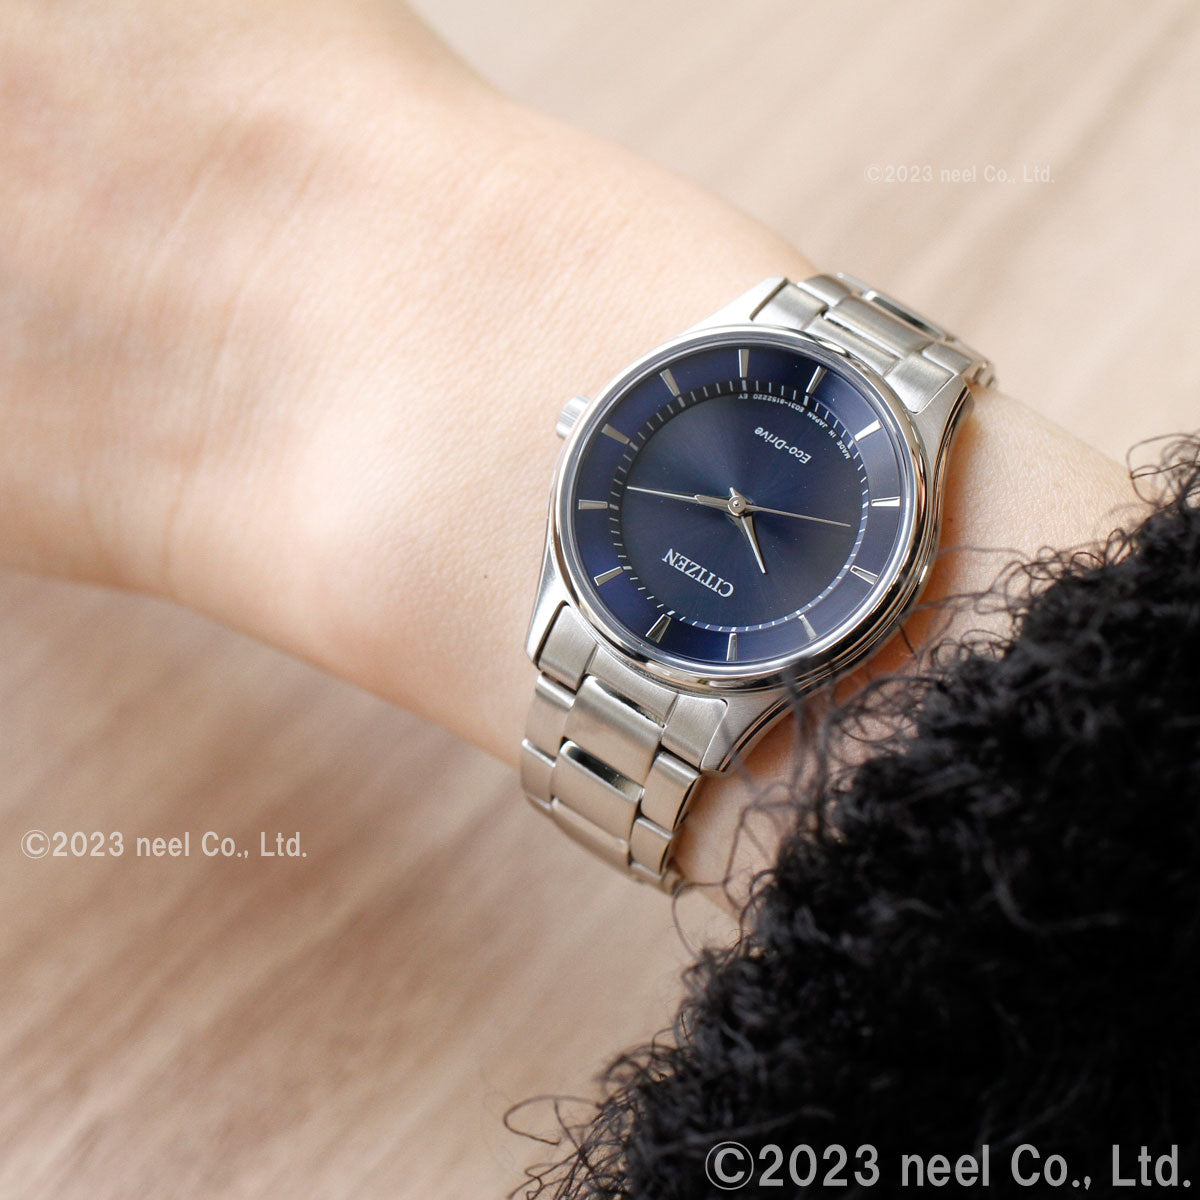 シチズン CITIZEN コレクション エコドライブ ソーラー 腕時計 レディース ペアモデル EM0400-51L